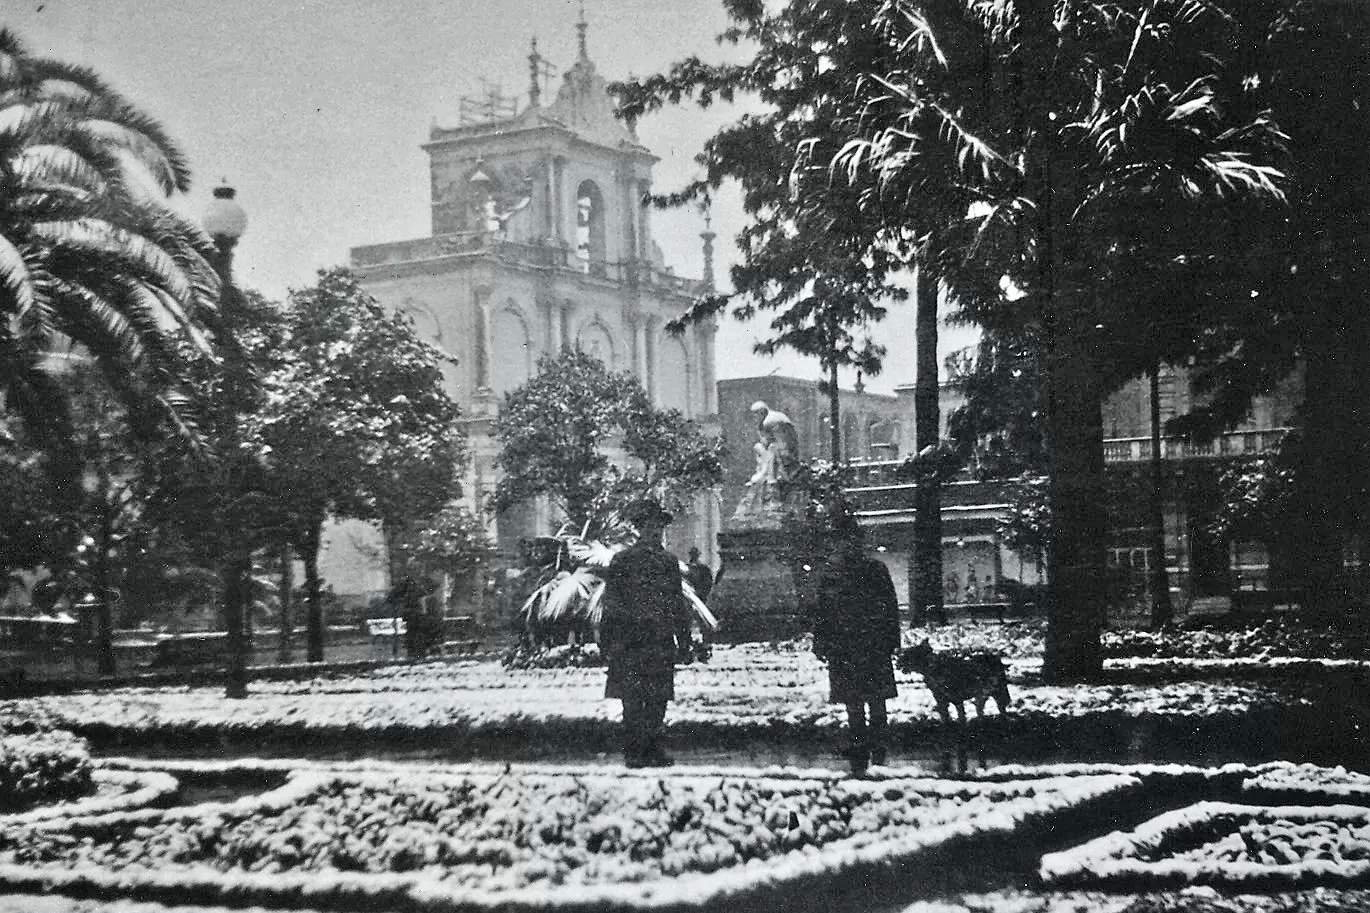 MANTO BLANCO. El 12 de julio de 1920 comenzó a nevar de madrugada en San Miguel de Tucumán, para sorpresa de todos los vecinos por un hecho inusual que quedó registrado en imágenes y crónicas.